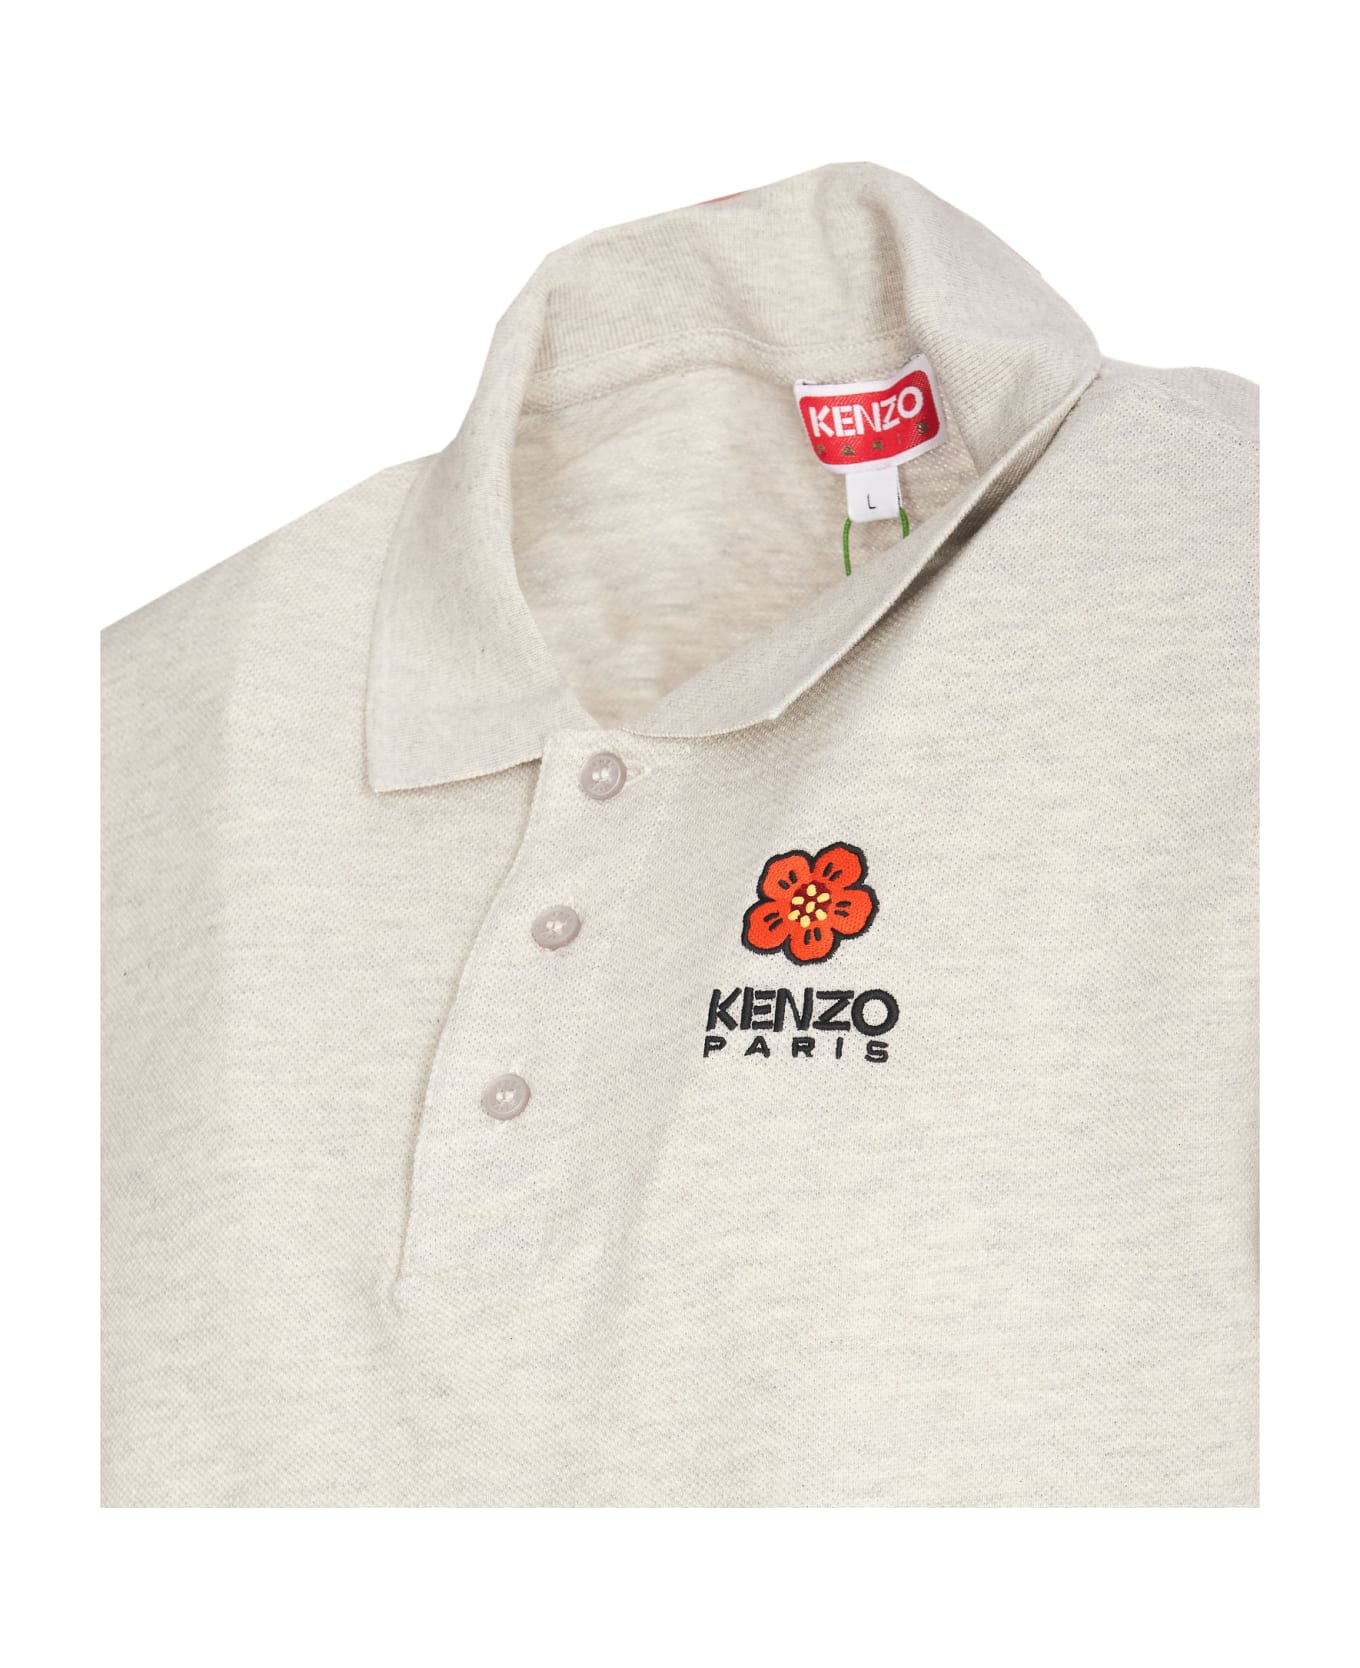 Kenzo Boke Flower Crest Polo Shirt - Grey ポロシャツ